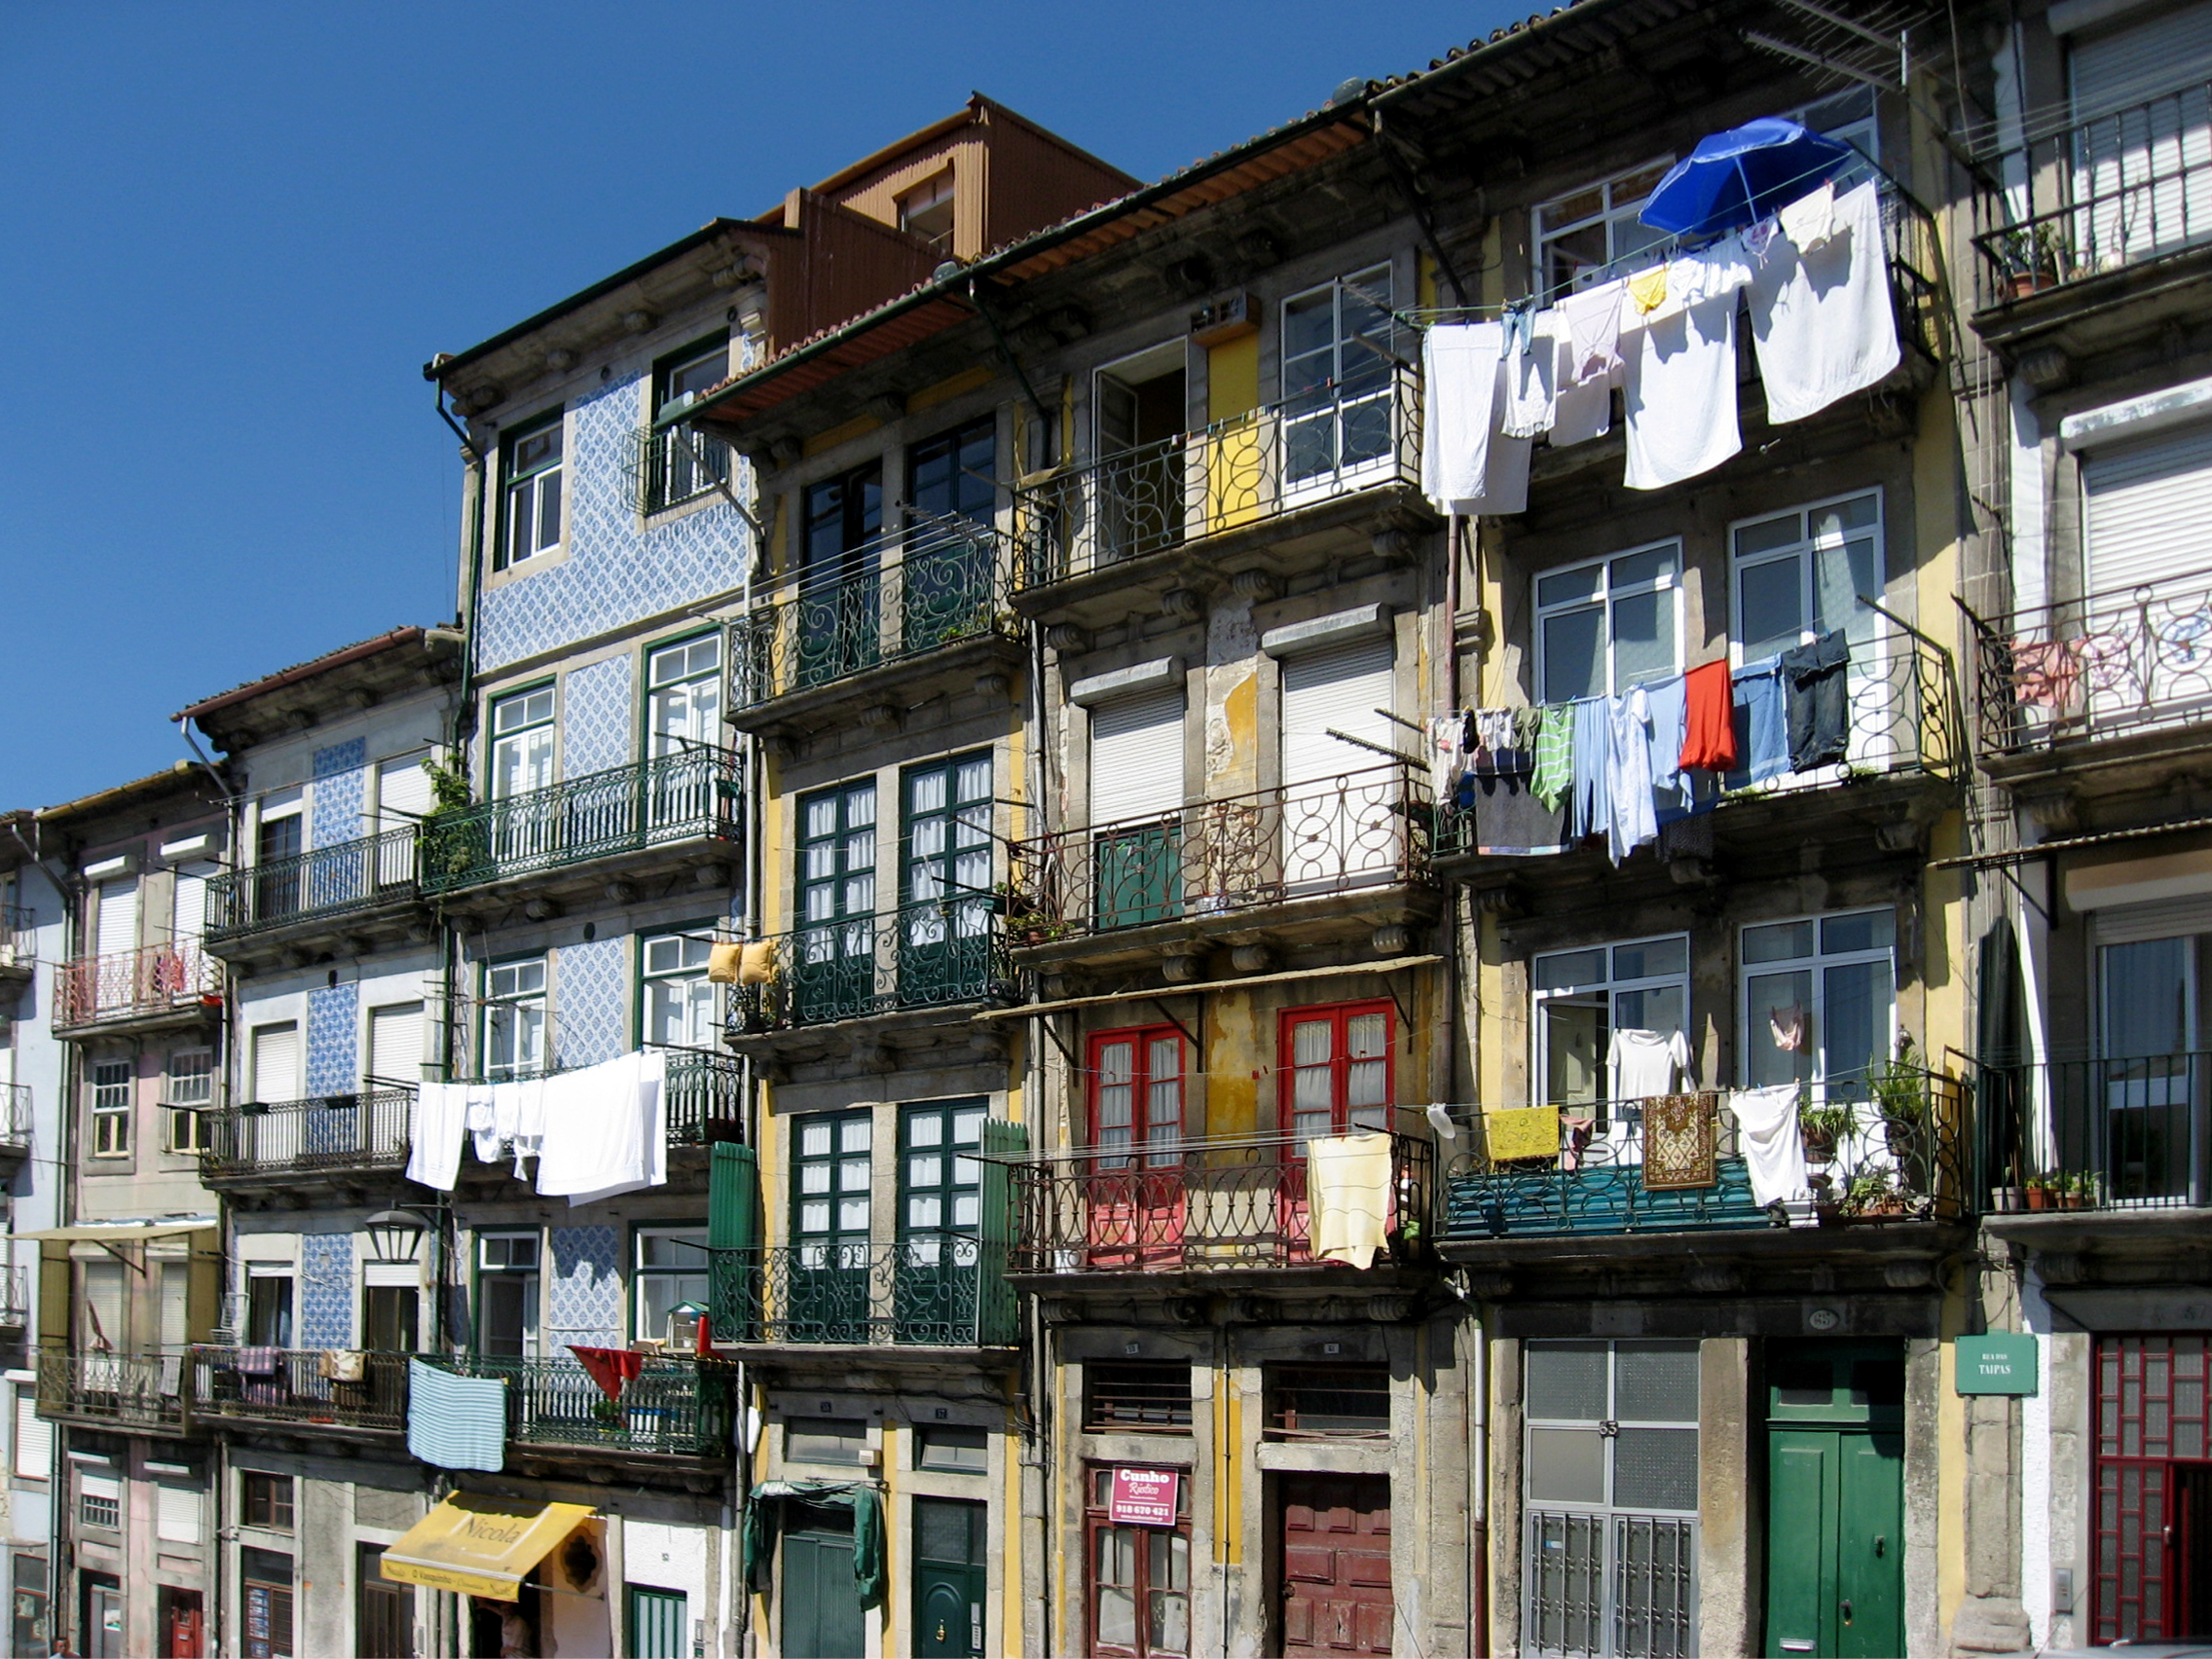 Houses in Porto...